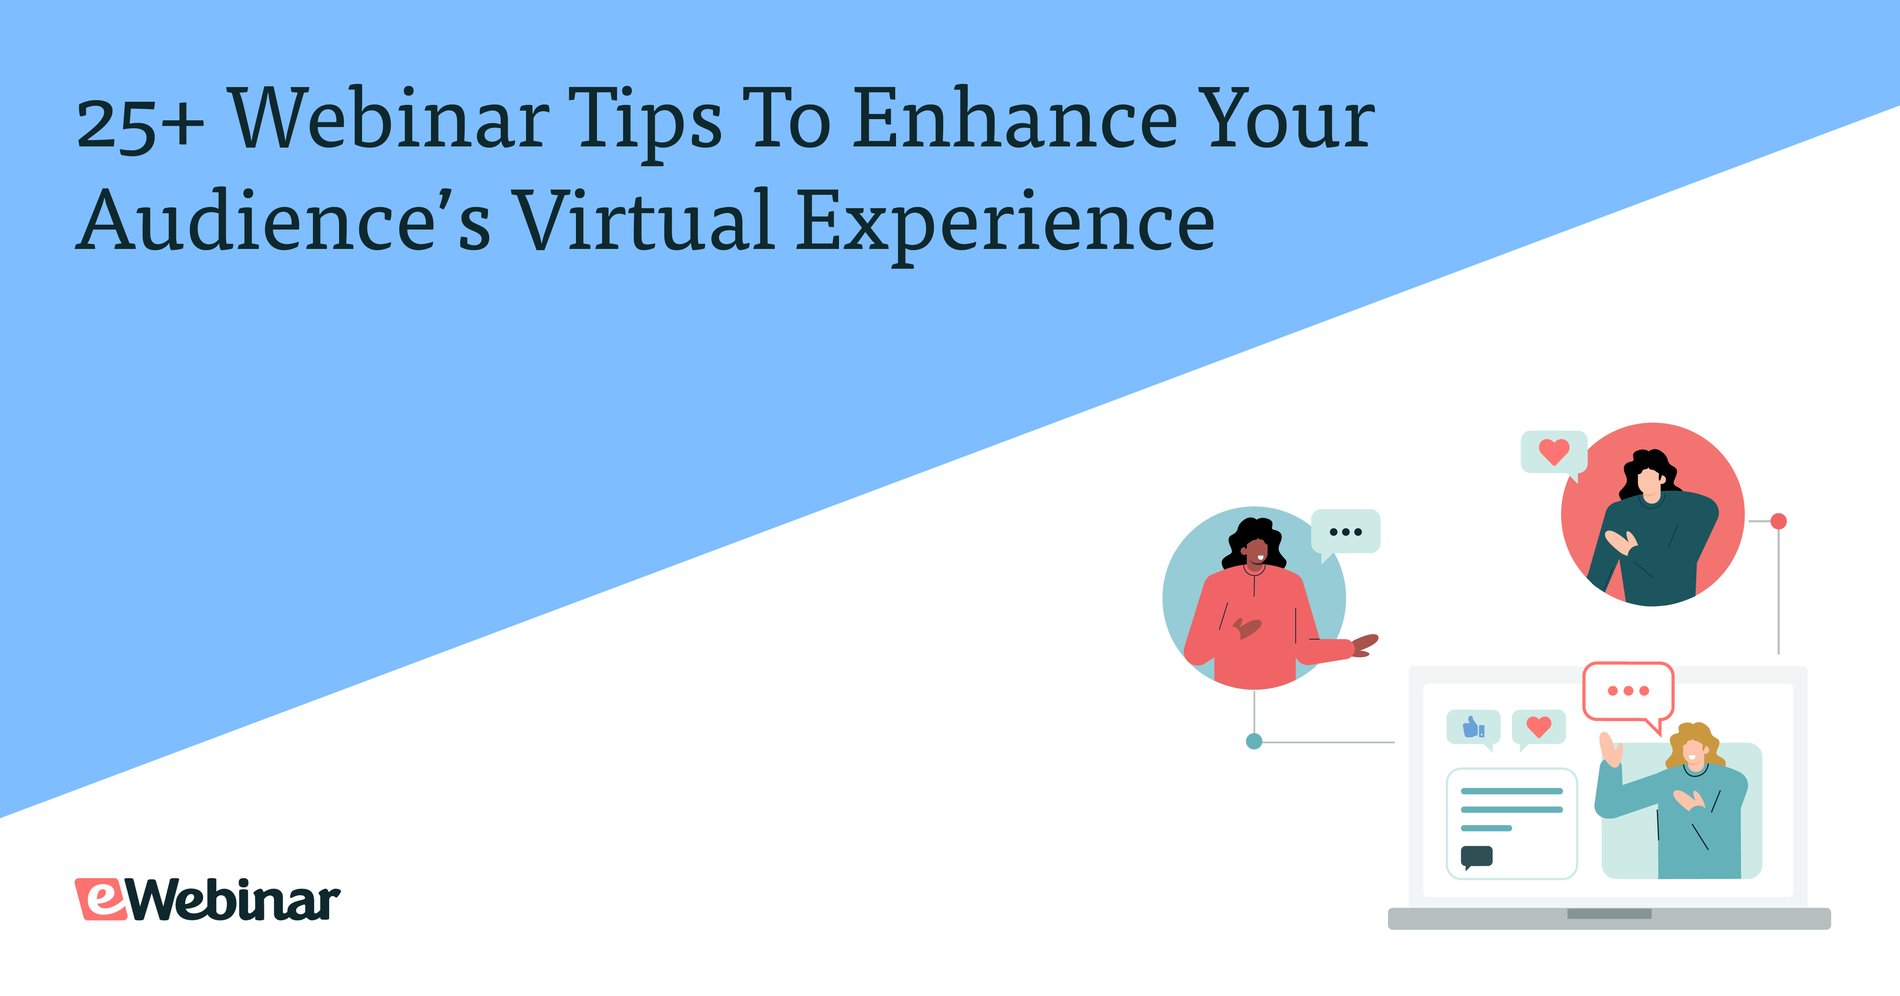 25+ conseils pour les webinaires afin d'améliorer l'expérience virtuelle de votre public